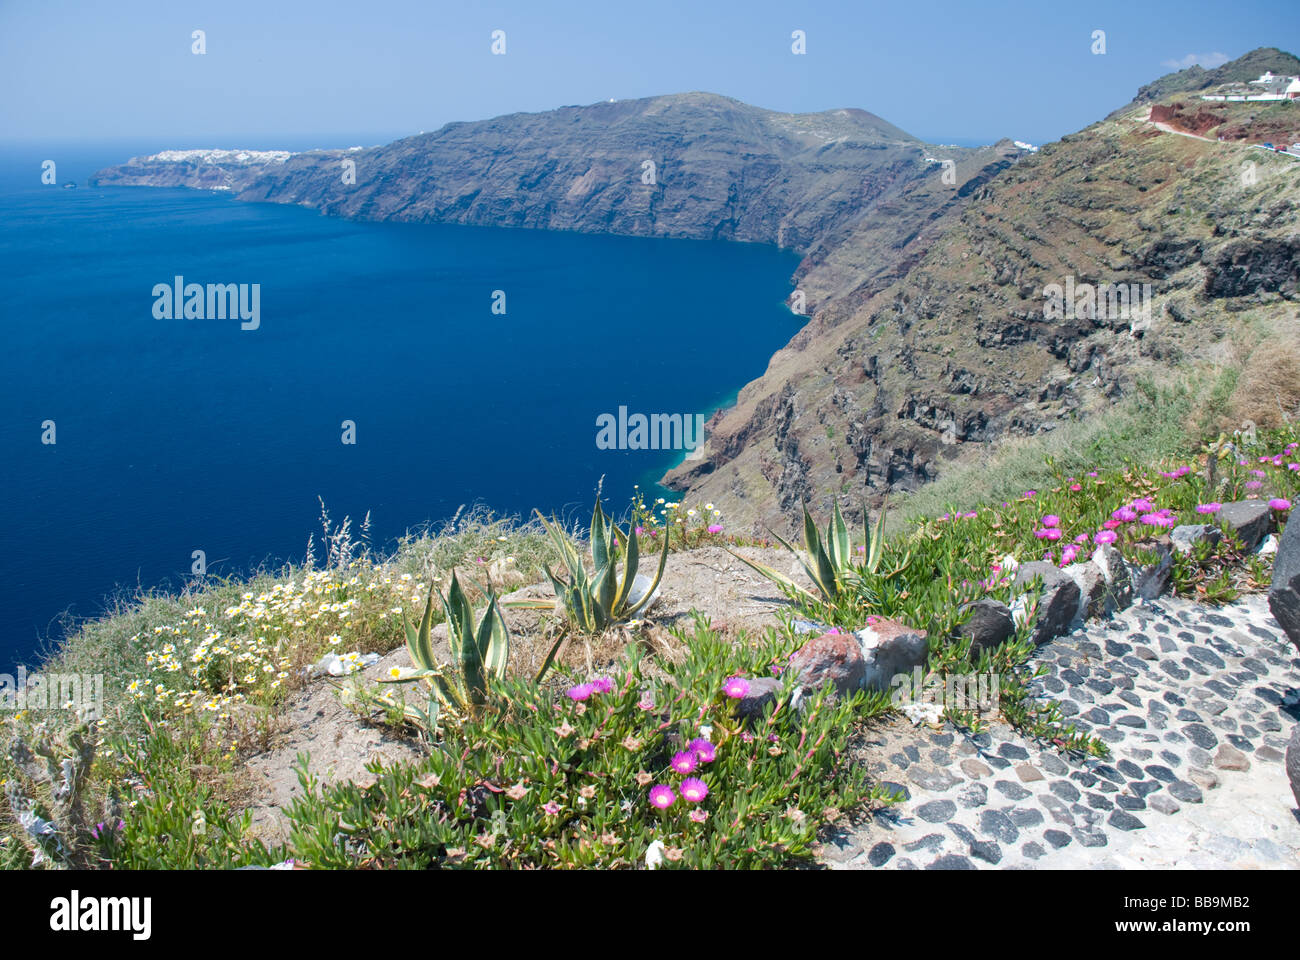 Oia, Santorini Stock Photo